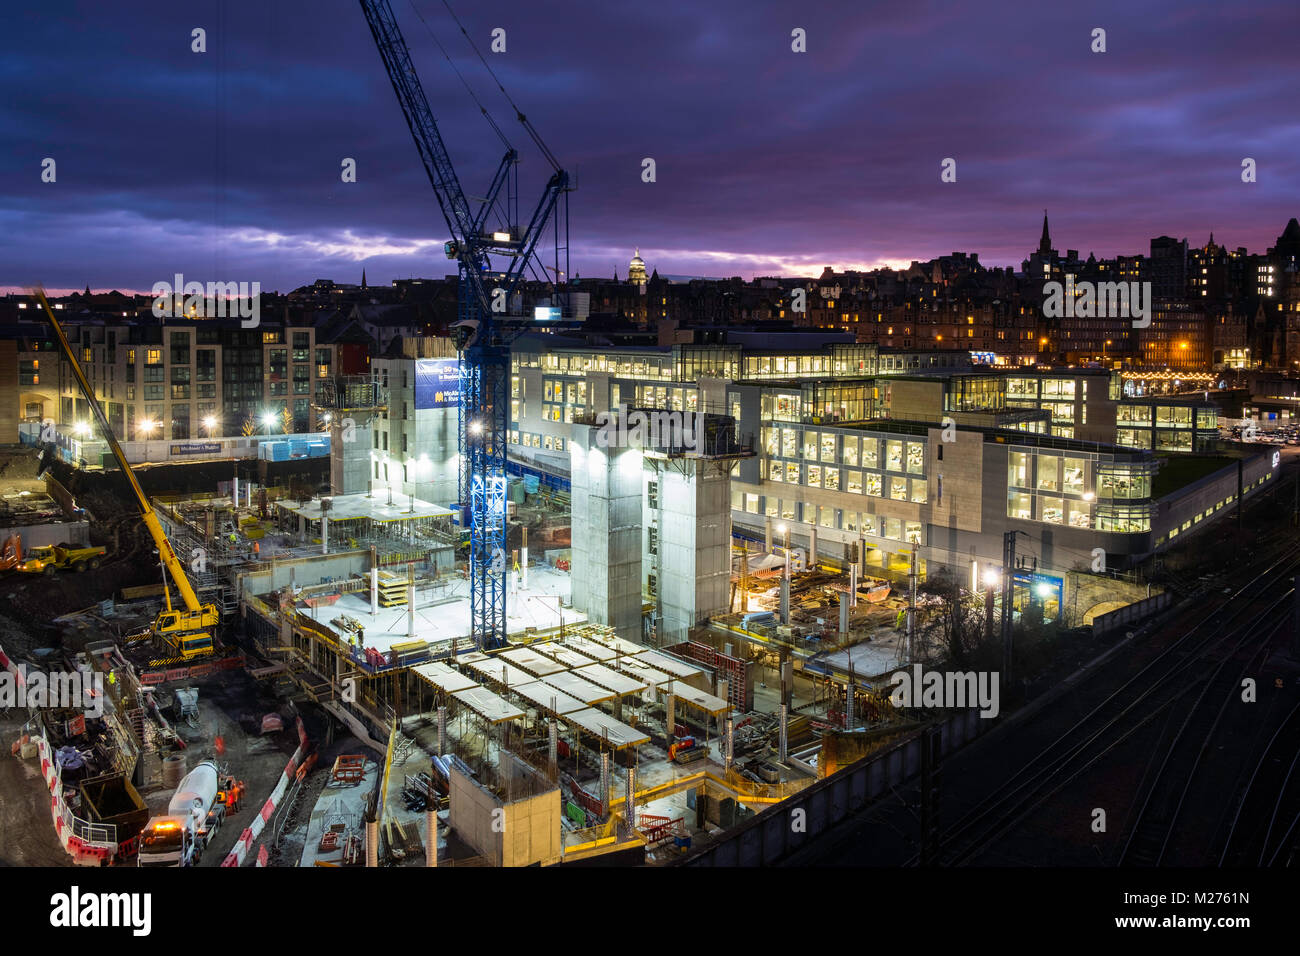 Vue de nuit sur le site de la construction de nouveaux bureaux Waverley Phase 2 du projet. Technique mixte, commercial et résidentiel de détail à Édimbourg Banque D'Images